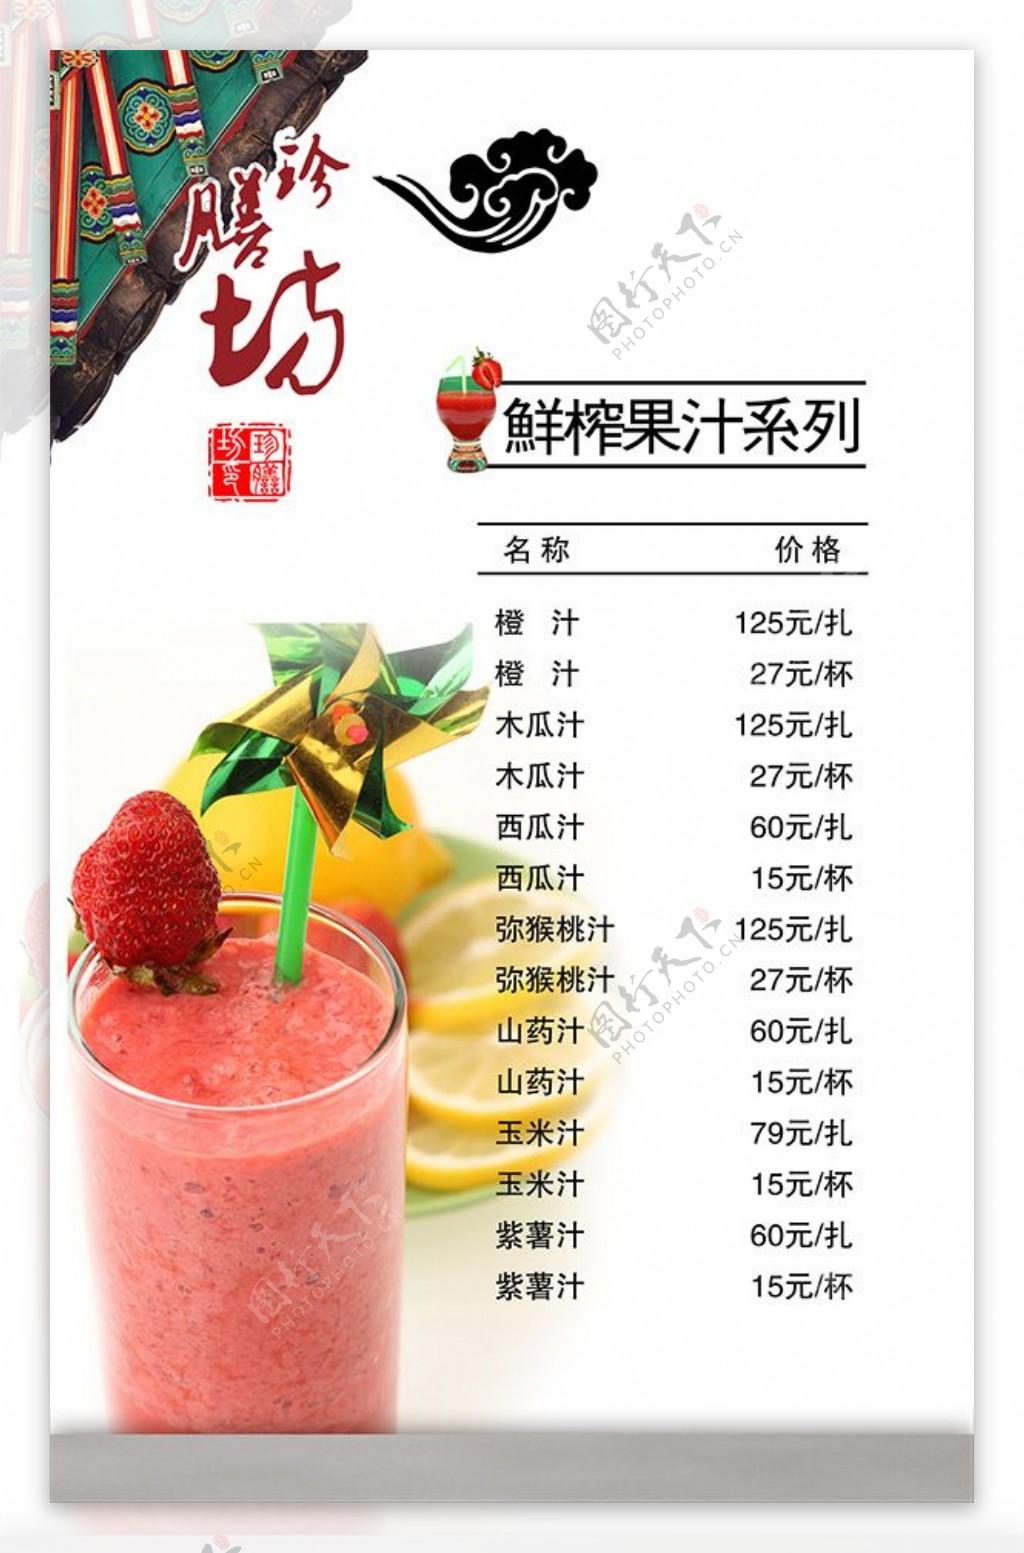 鲜榨果汁价目表菜单模板psd素材